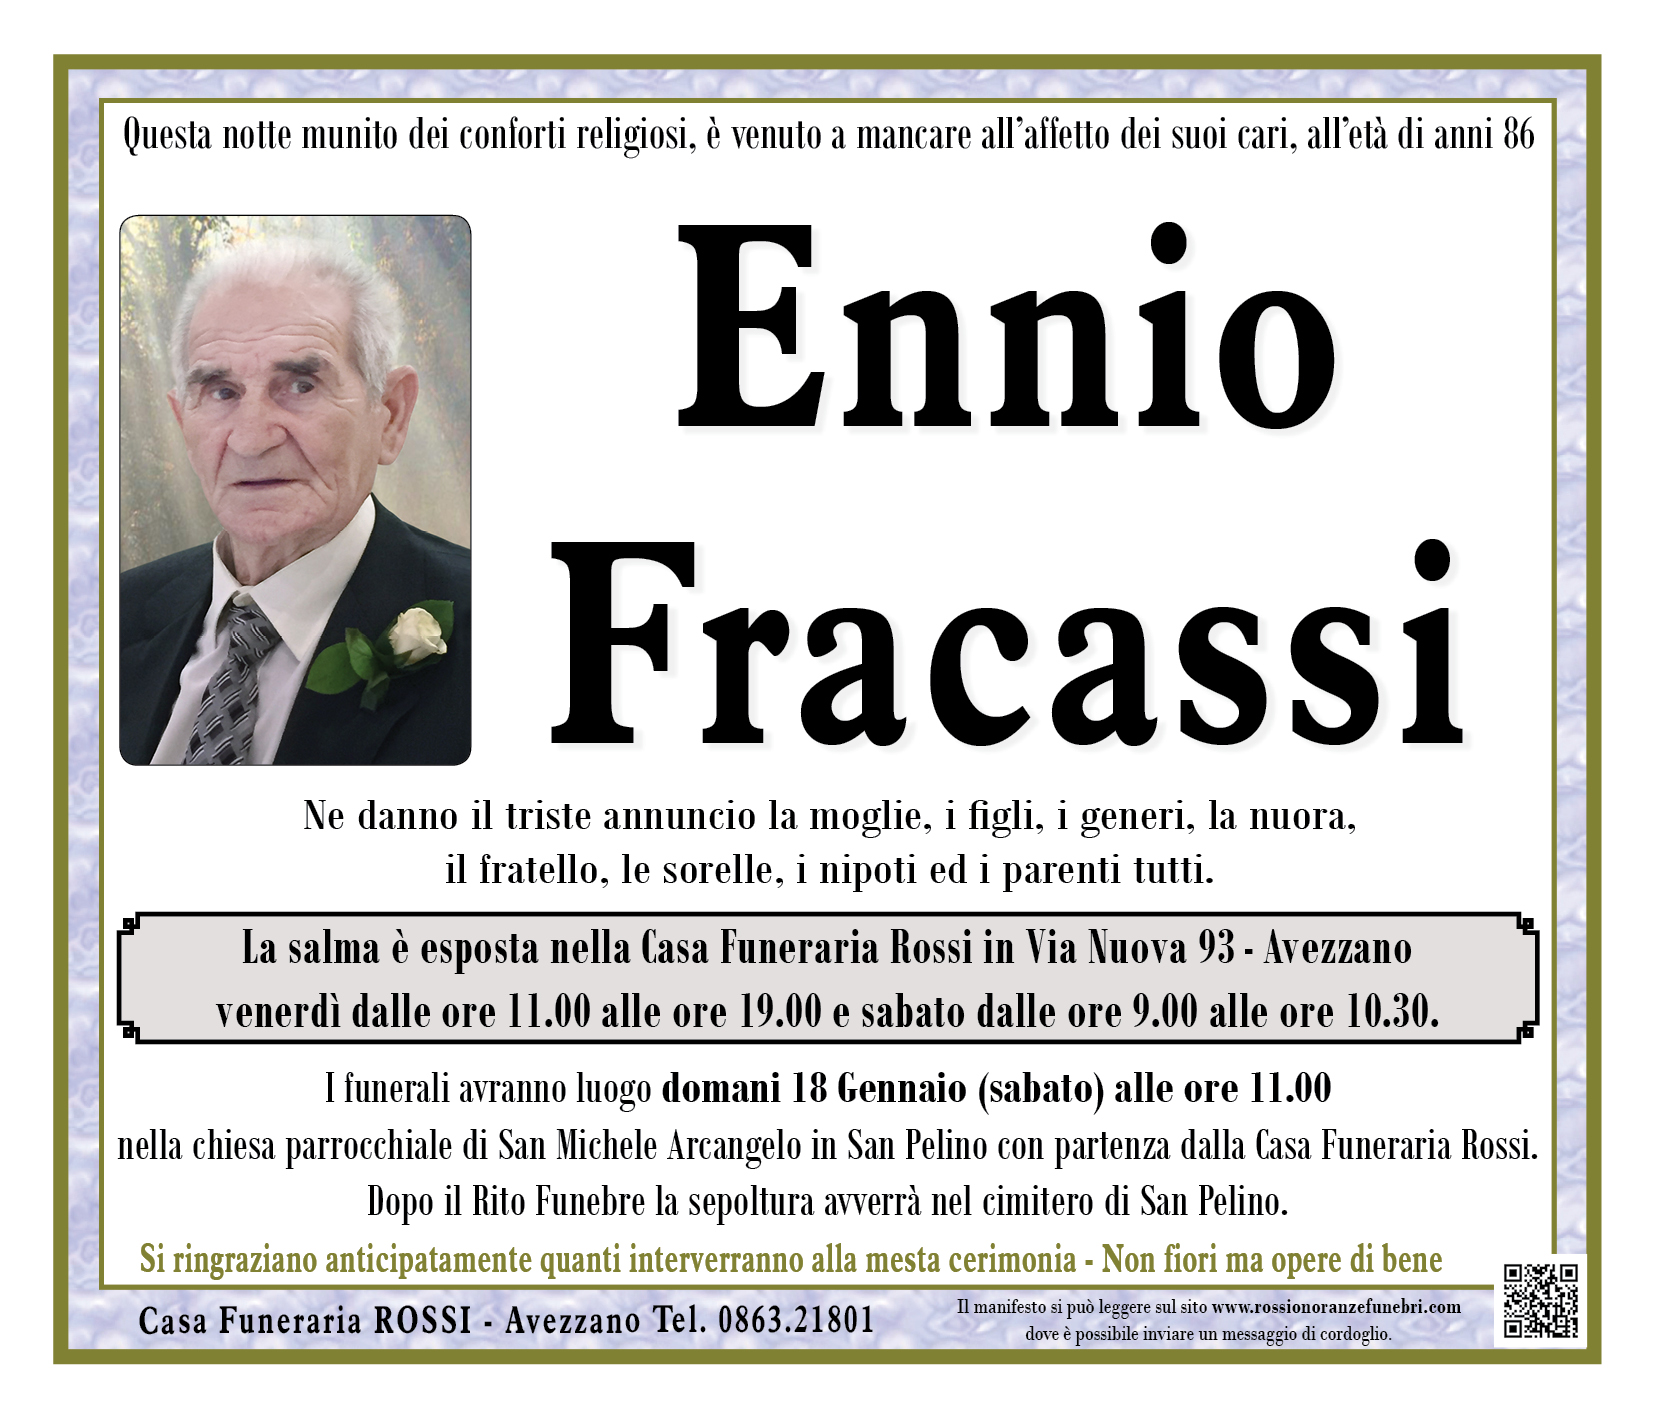 Ennio Fracassi